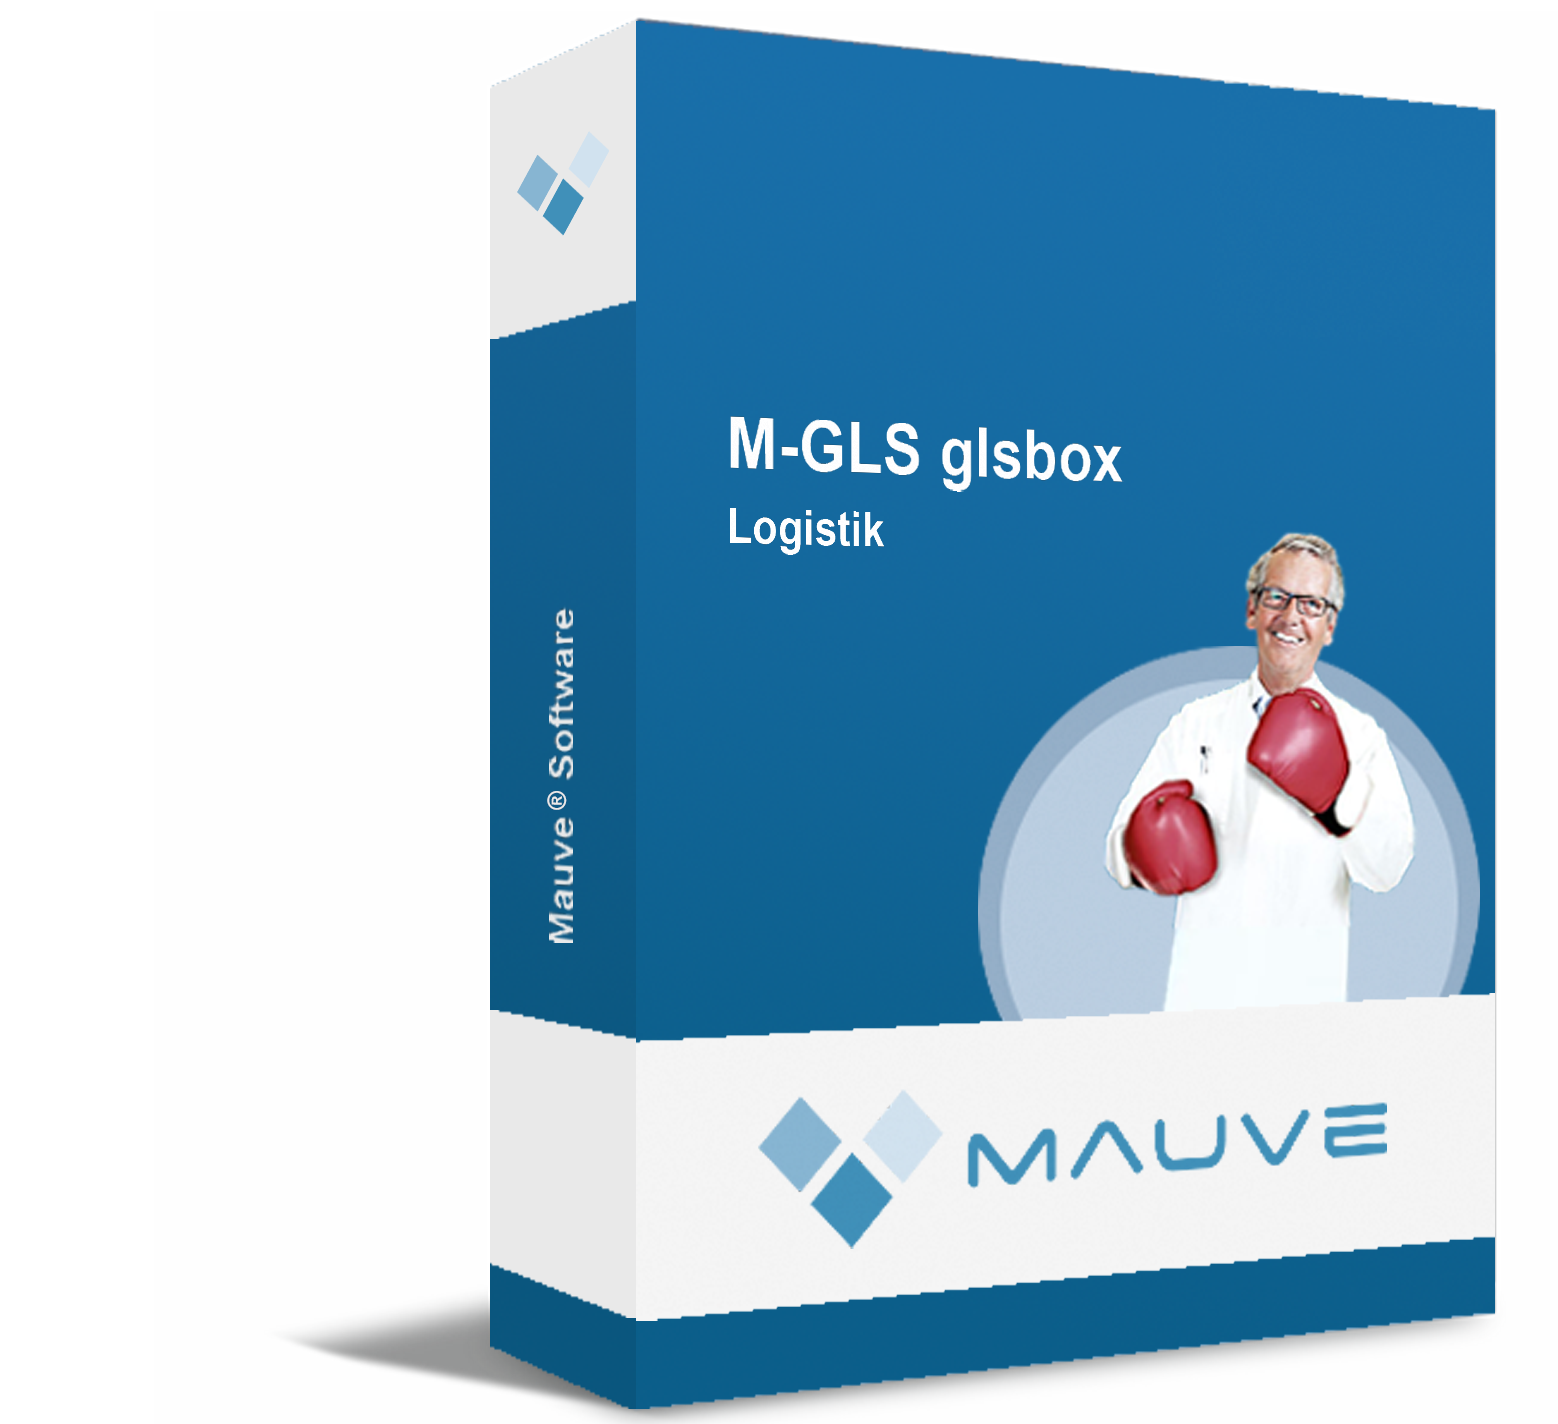 M-GLS glsbox